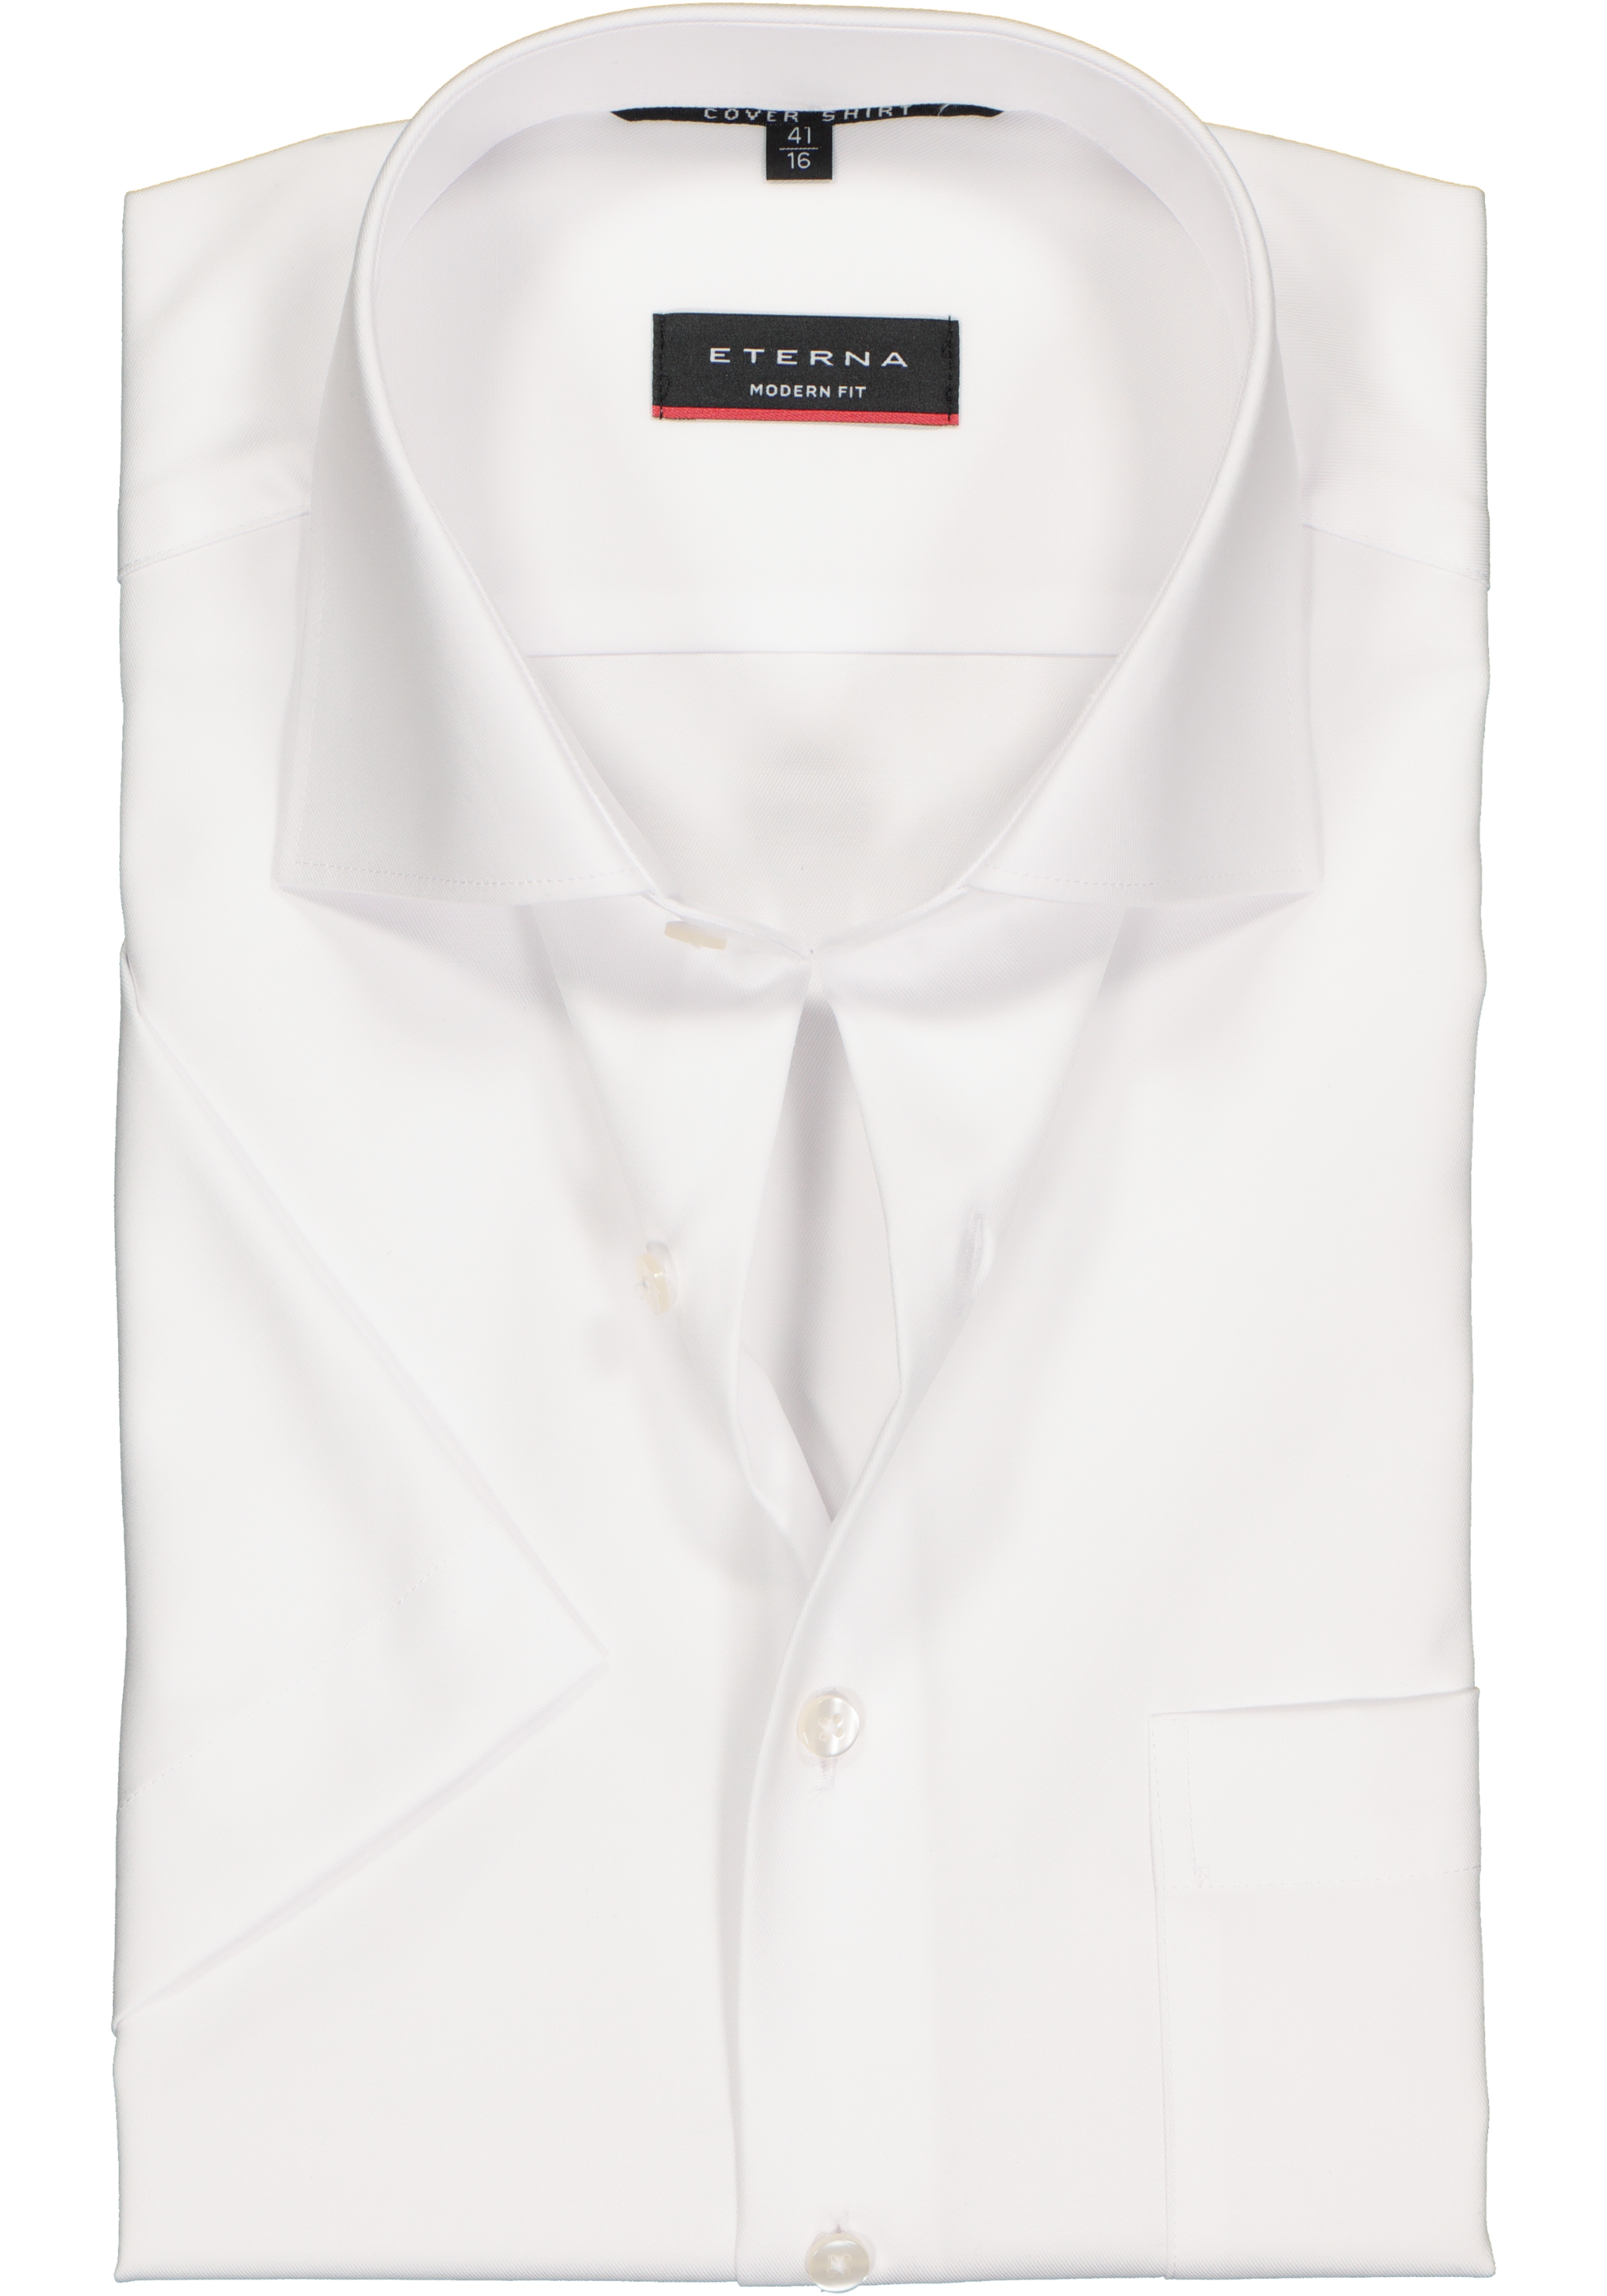 ETERNA modern fit overhemd, niet doorschijnend twill met korte mouw, wit